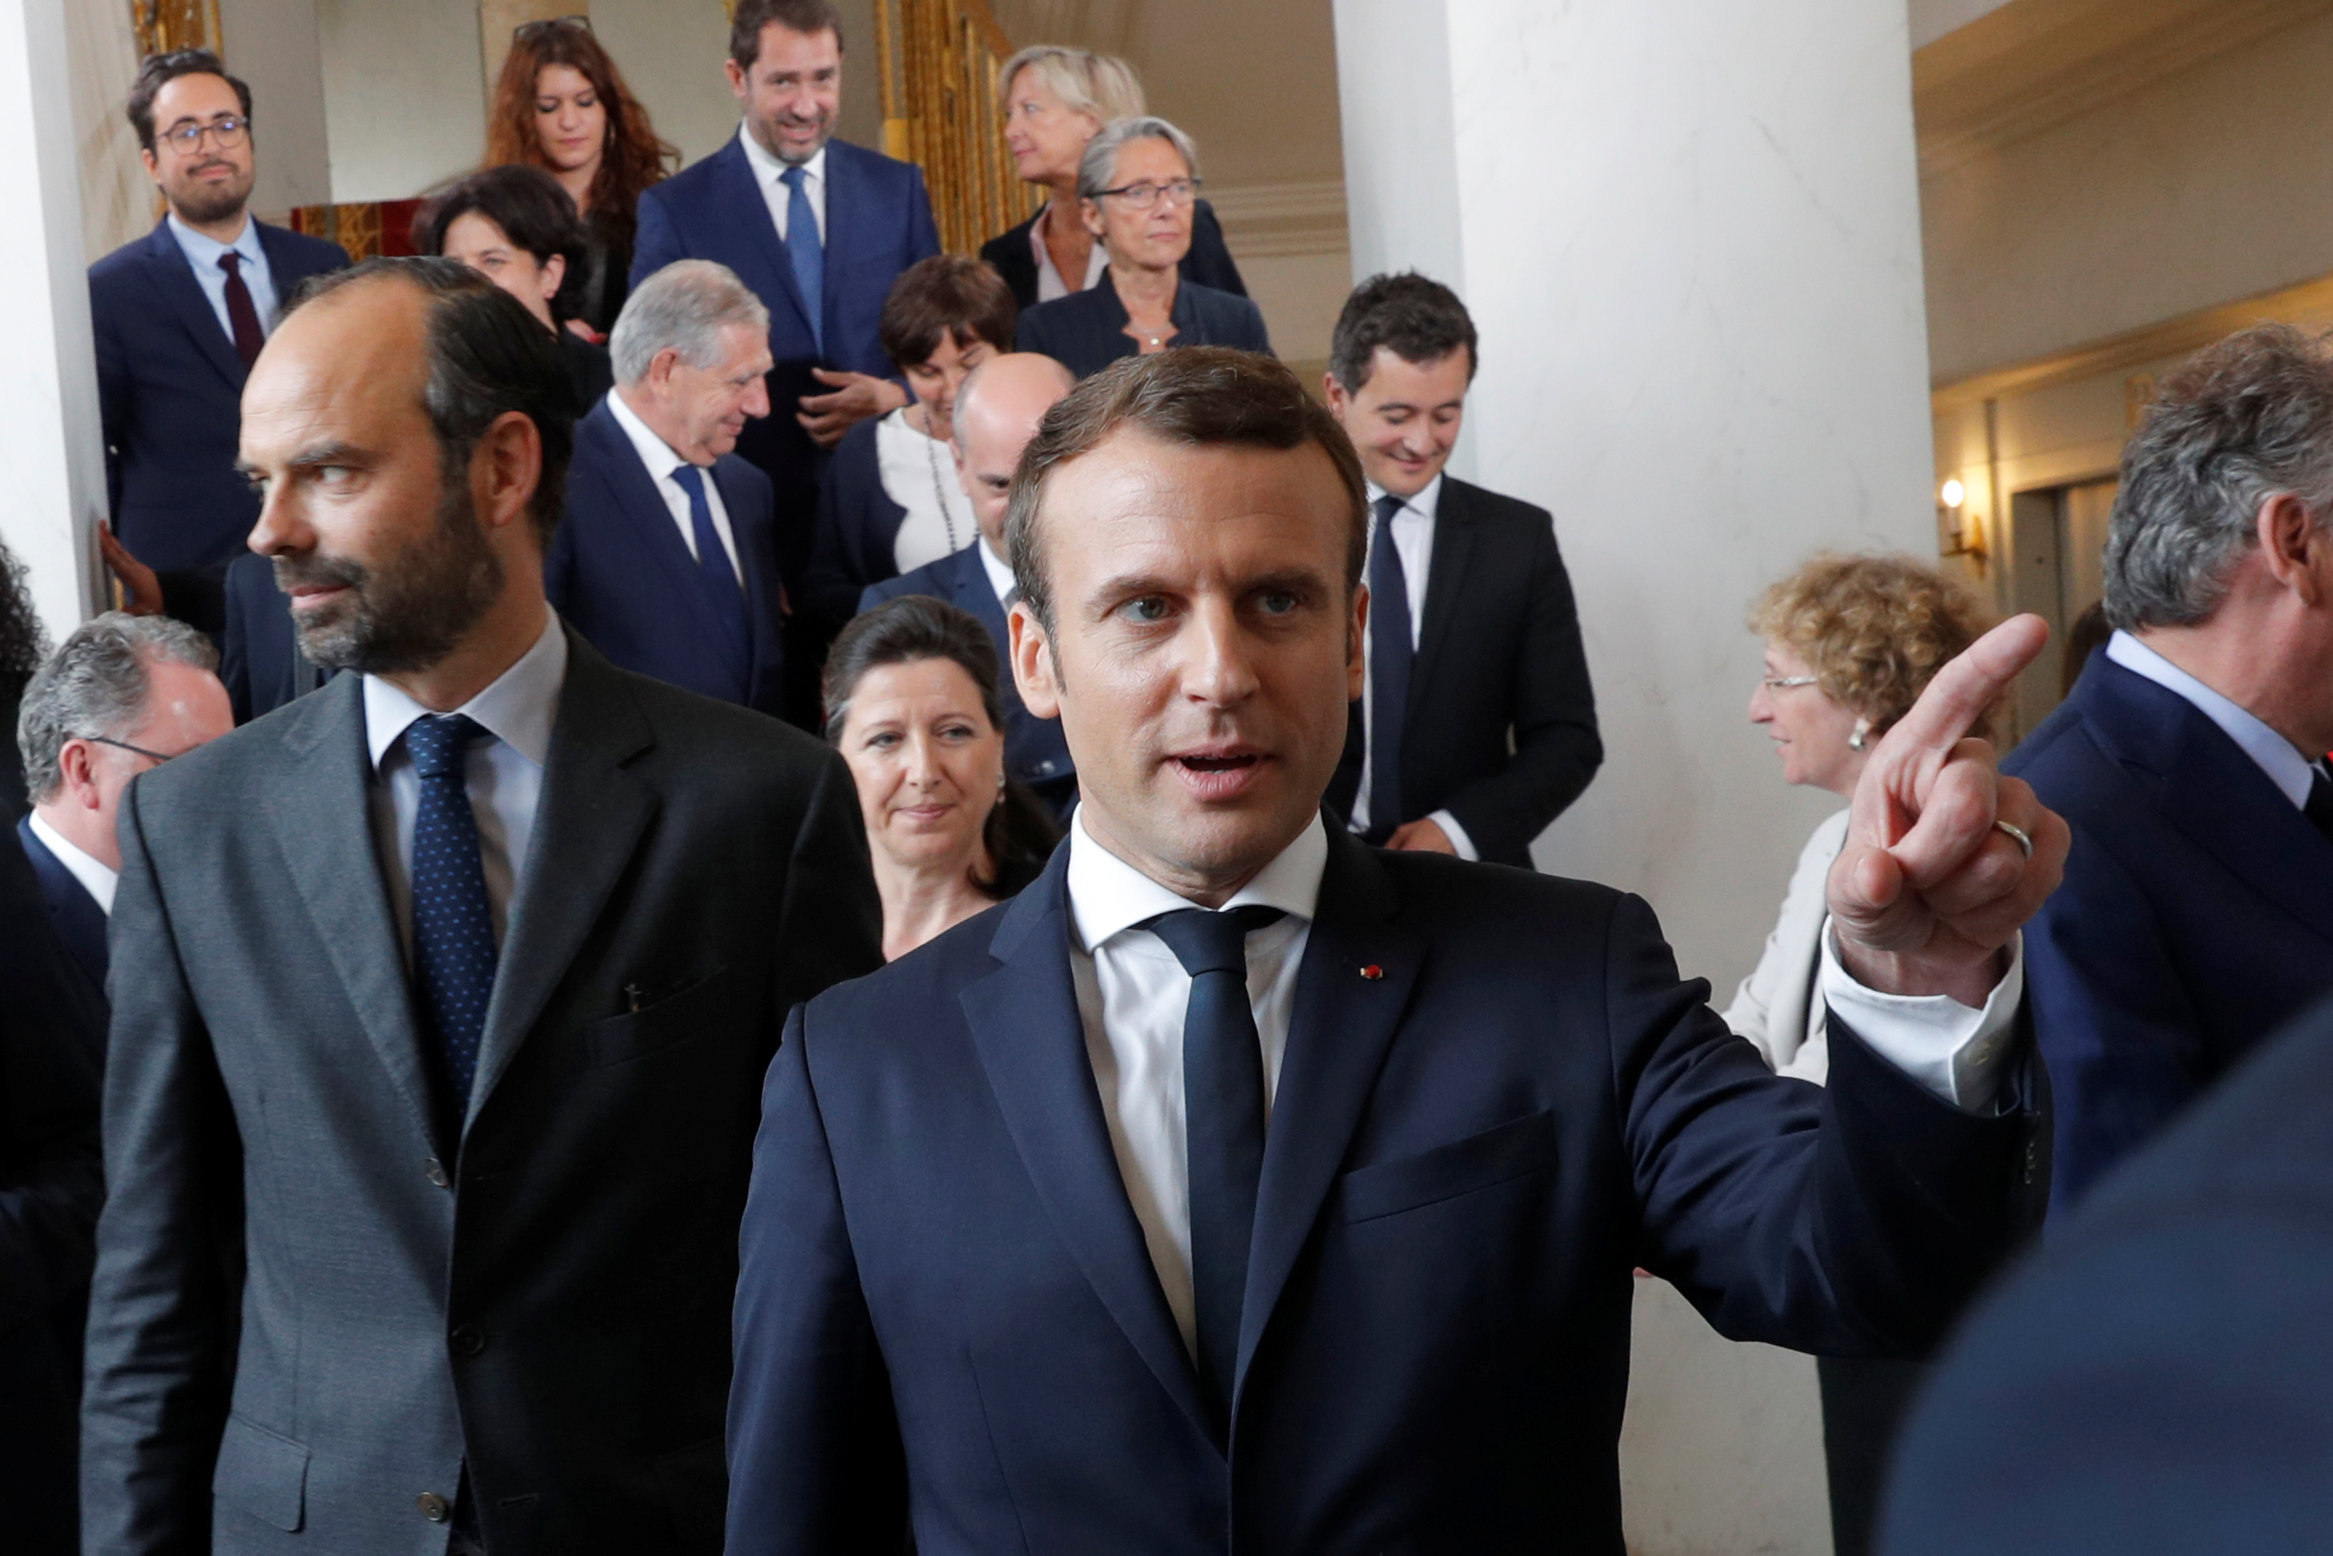 Οι Γάλλοι δεν δίνουν περίοδο χάριτος στον νέο πρόεδρο